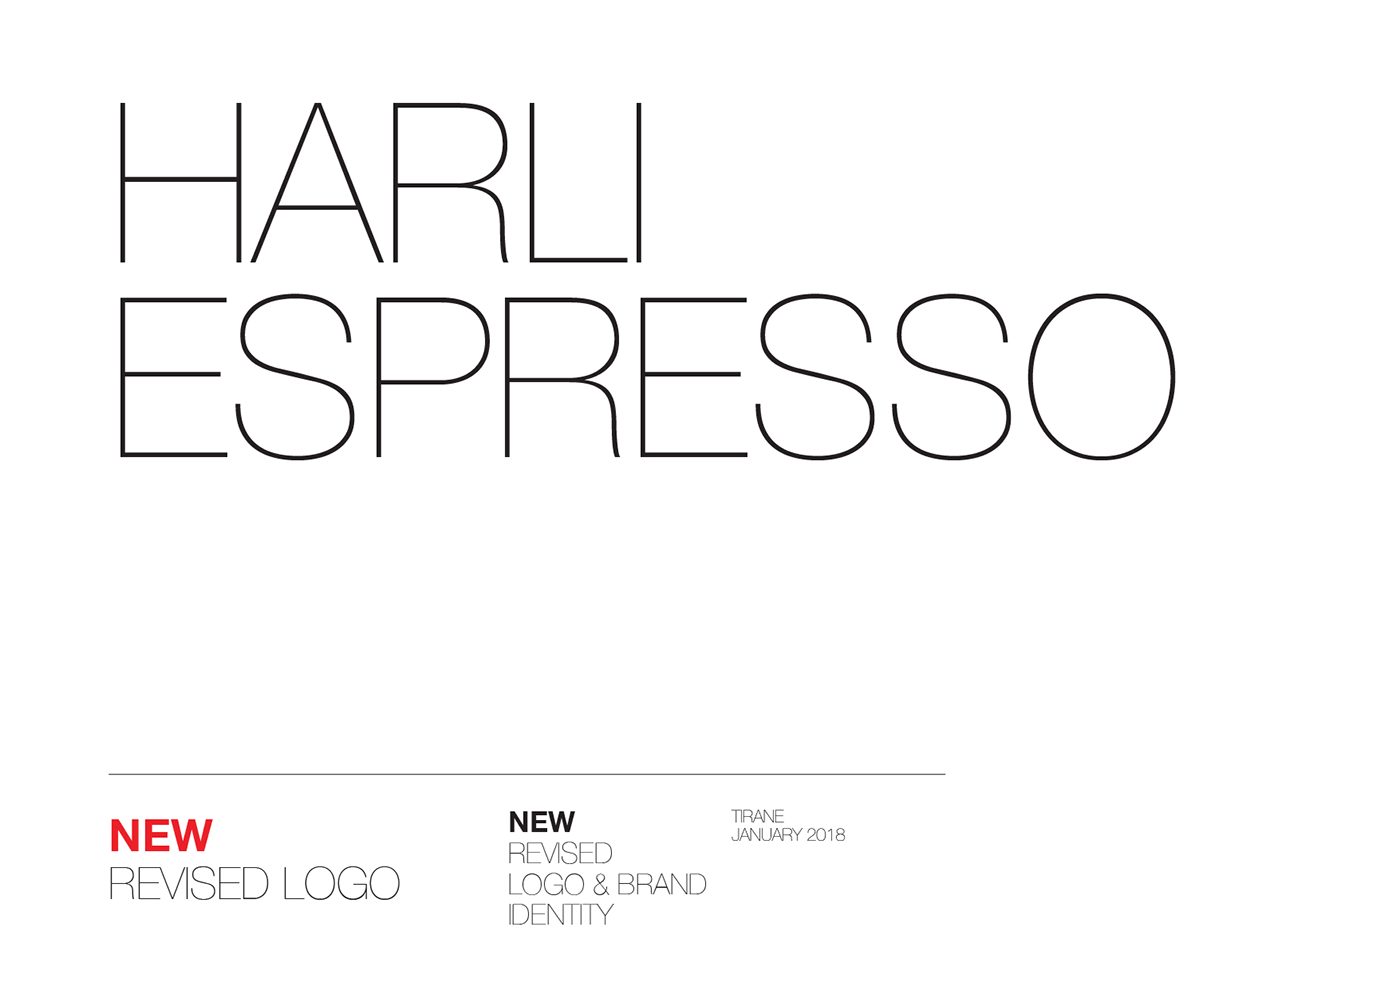 Revised Logo - Harli Espresso / New Revised Logo & Brand Identity